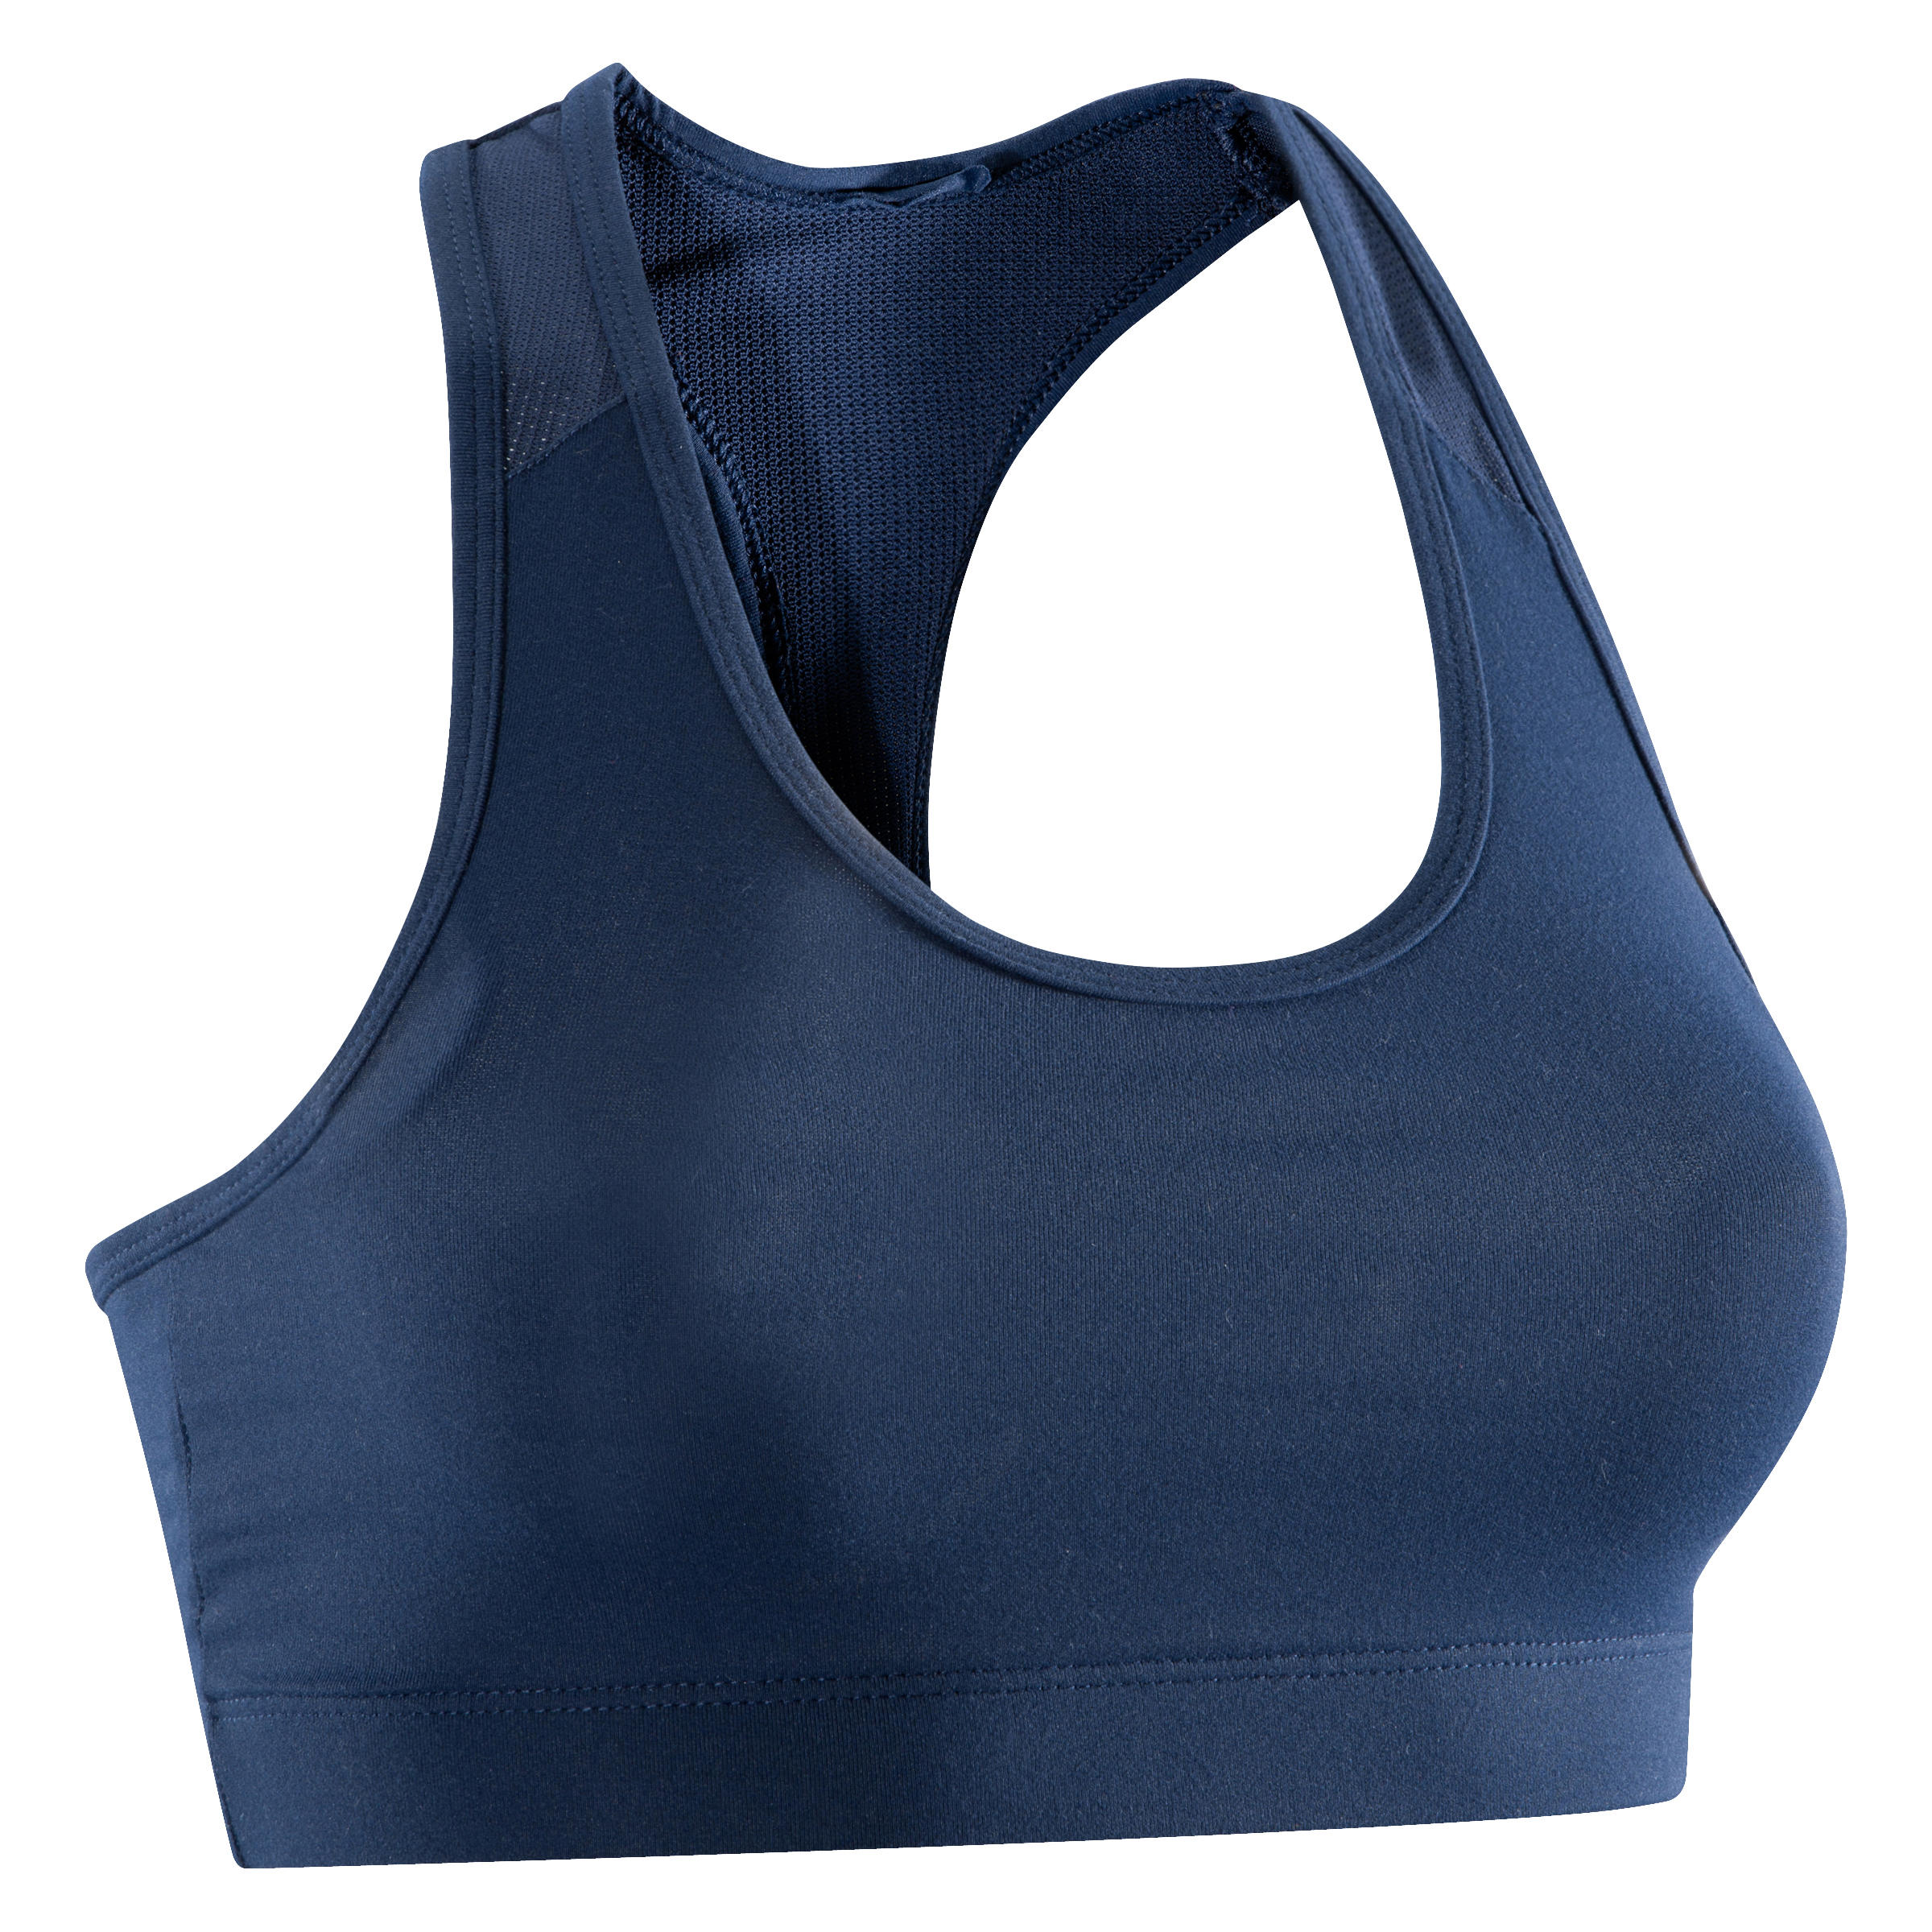 DOMYOS 100 Women's Cardio Fitness Sports Bra - Navy Blue